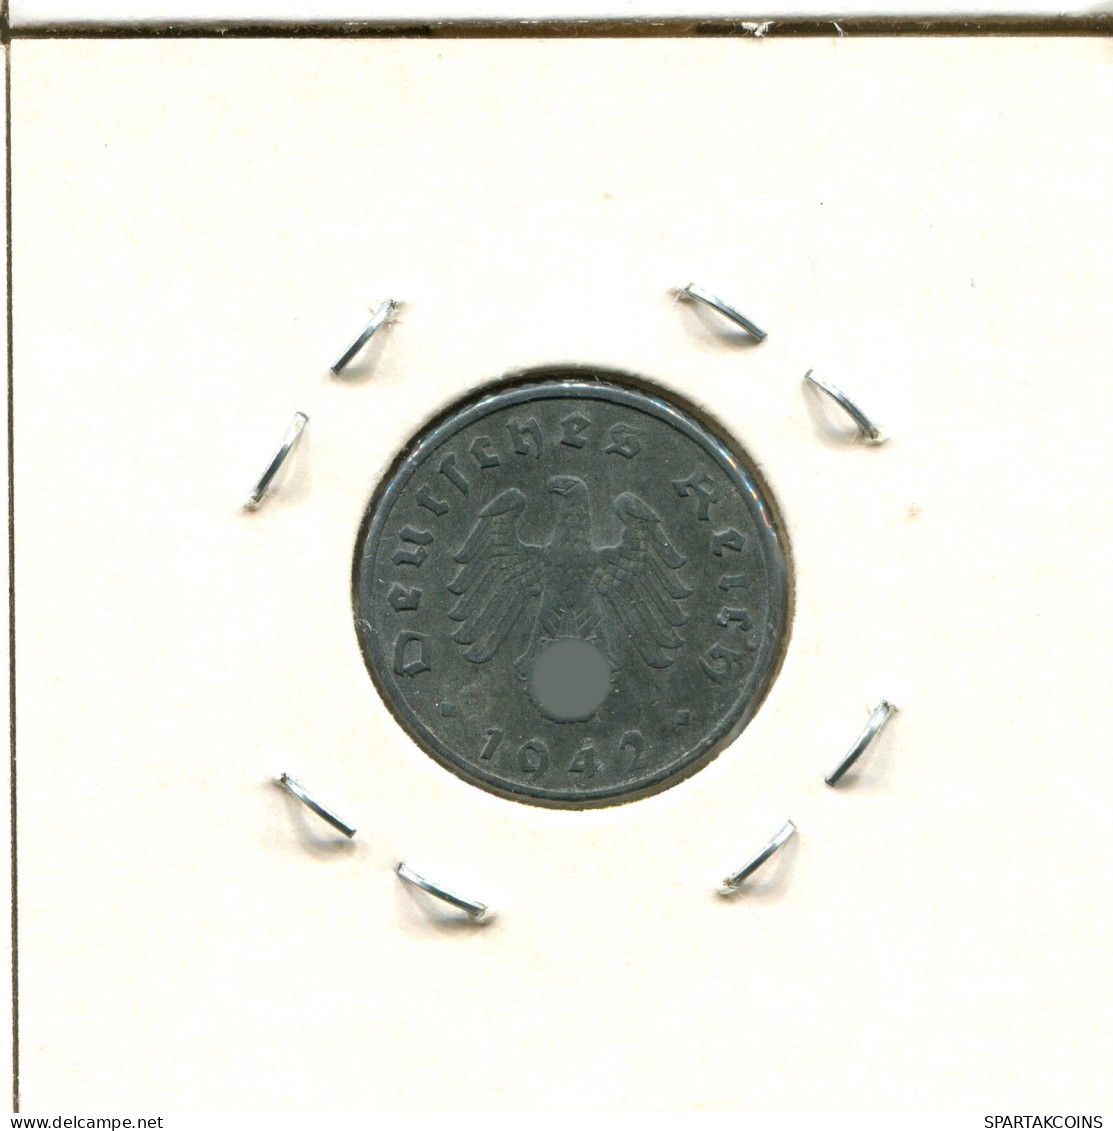 5 REICHSPFENNIG 1942 A ALEMANIA Moneda GERMANY #DA396.2.E.A - 5 Reichspfennig